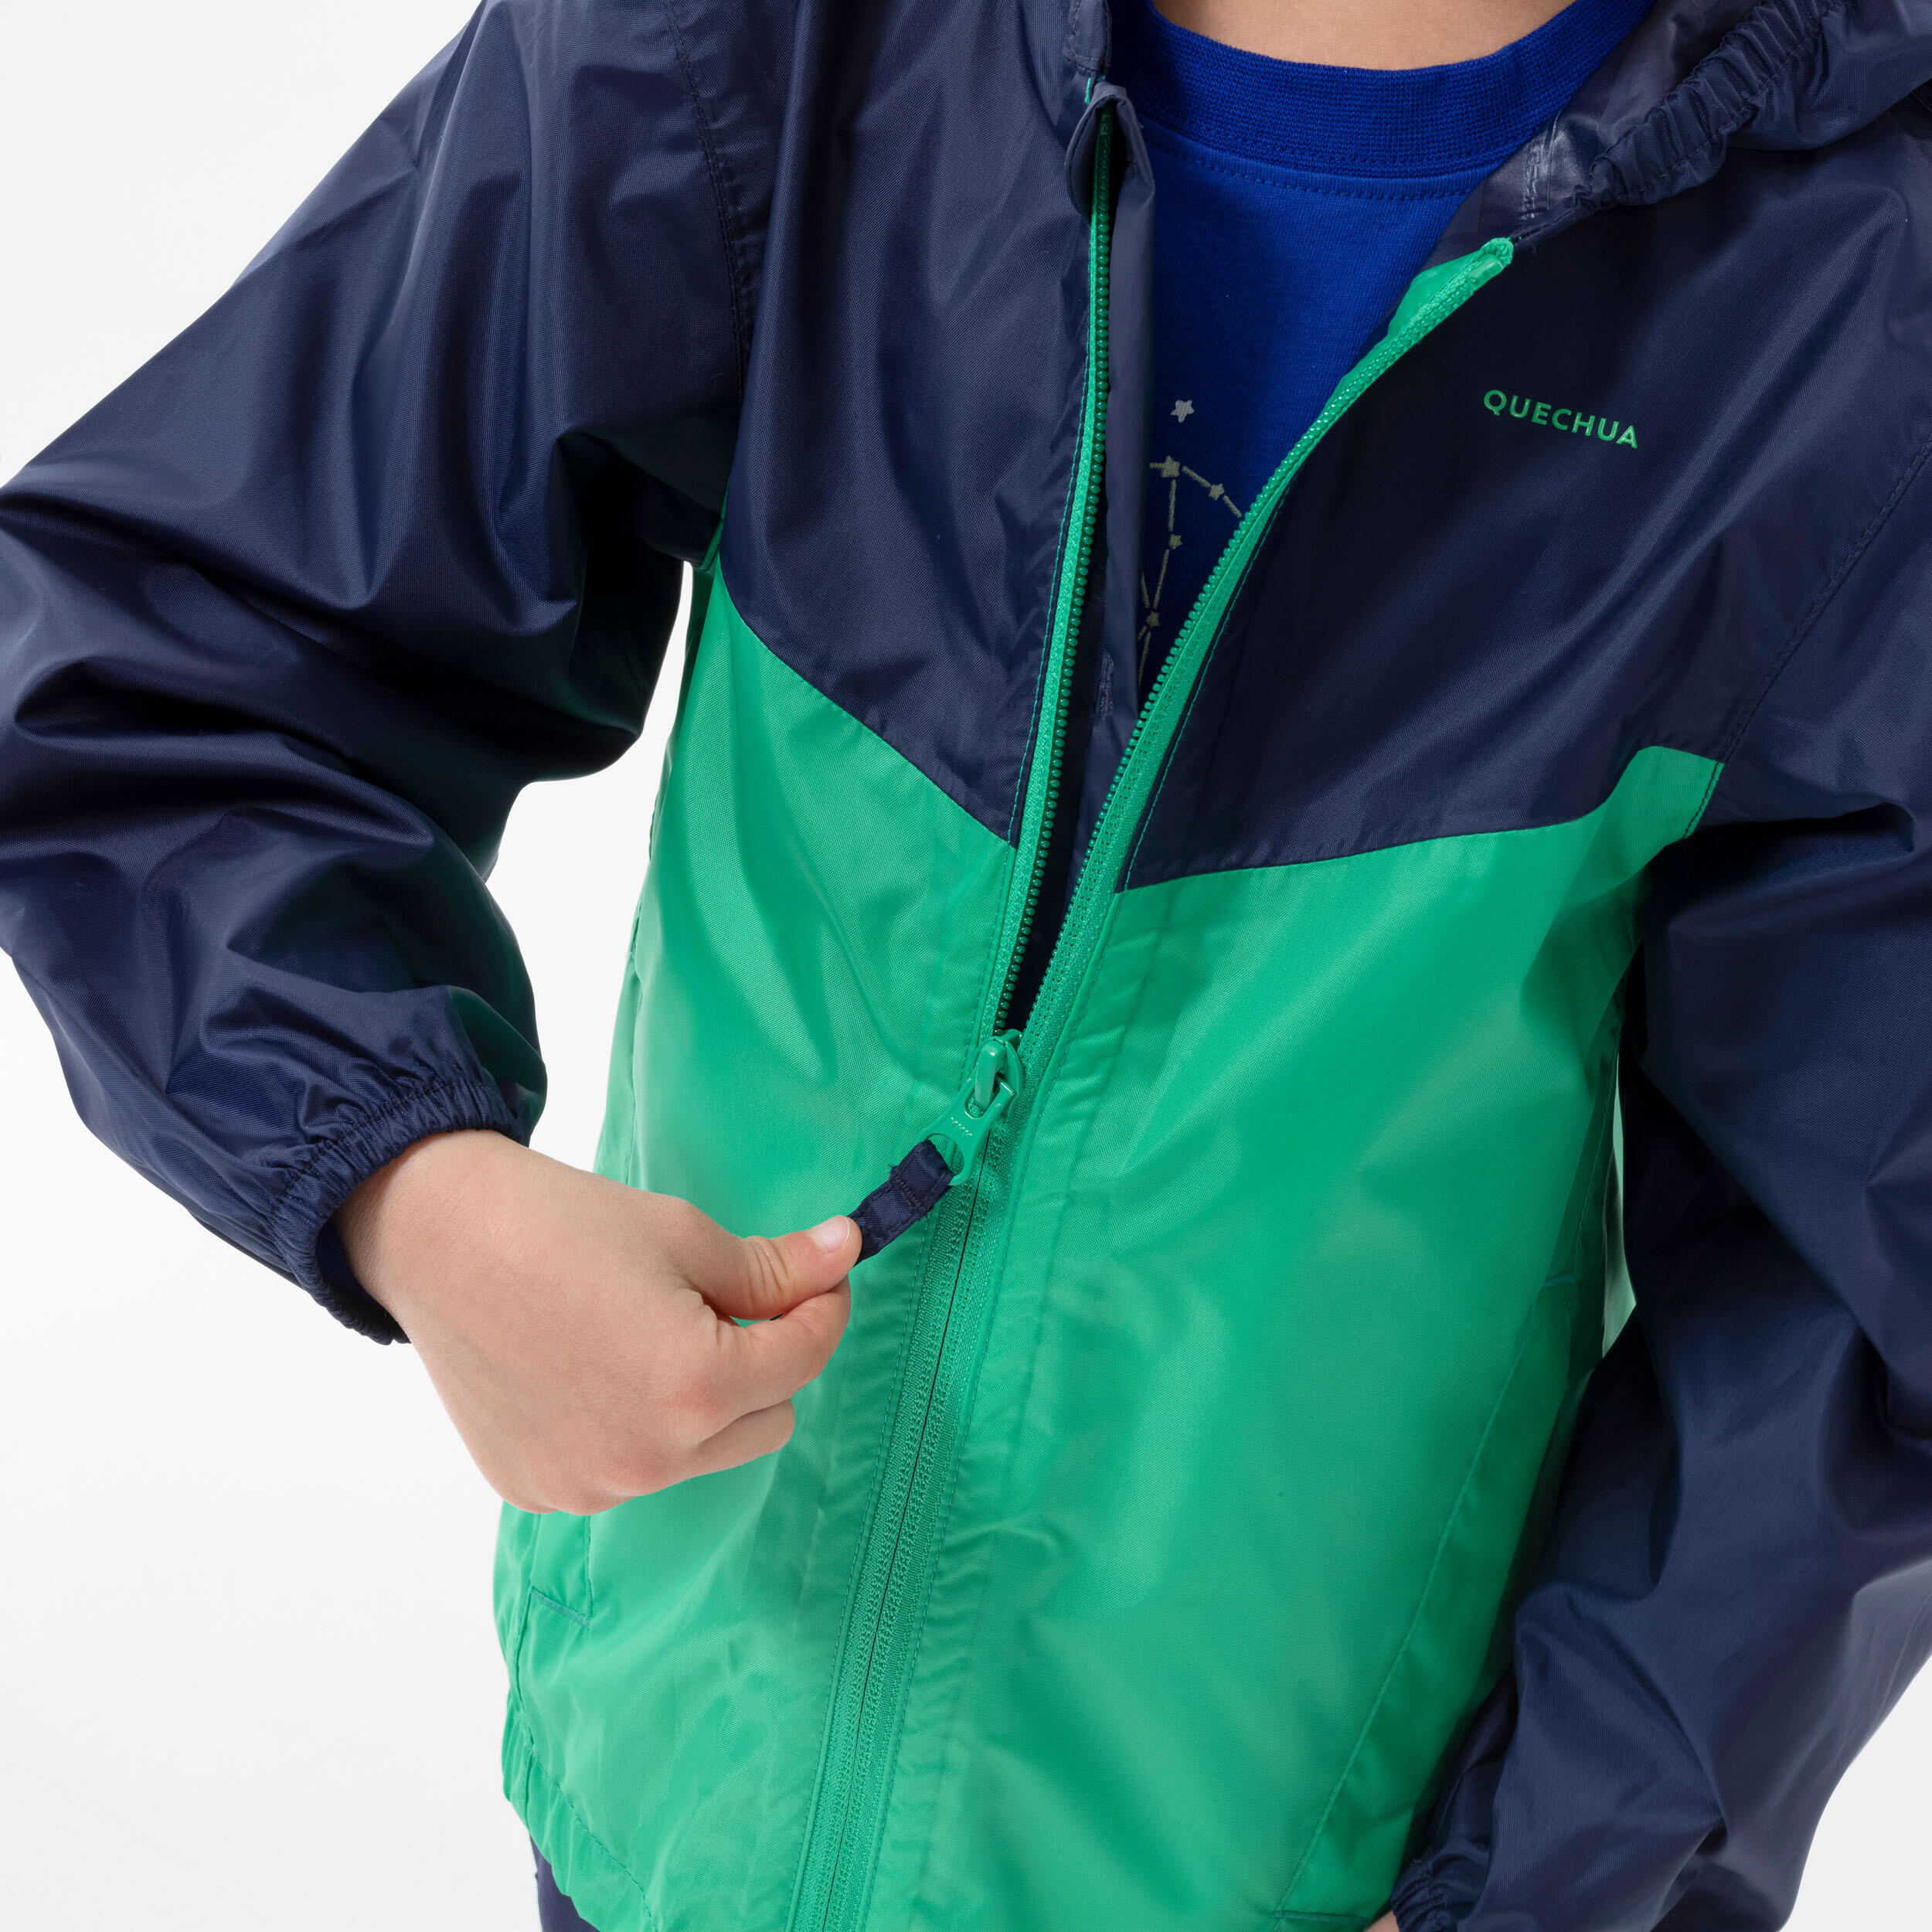 Kids’ Waterproof Hiking Jacket - MH100 Zip - Aged 2-6 7/8